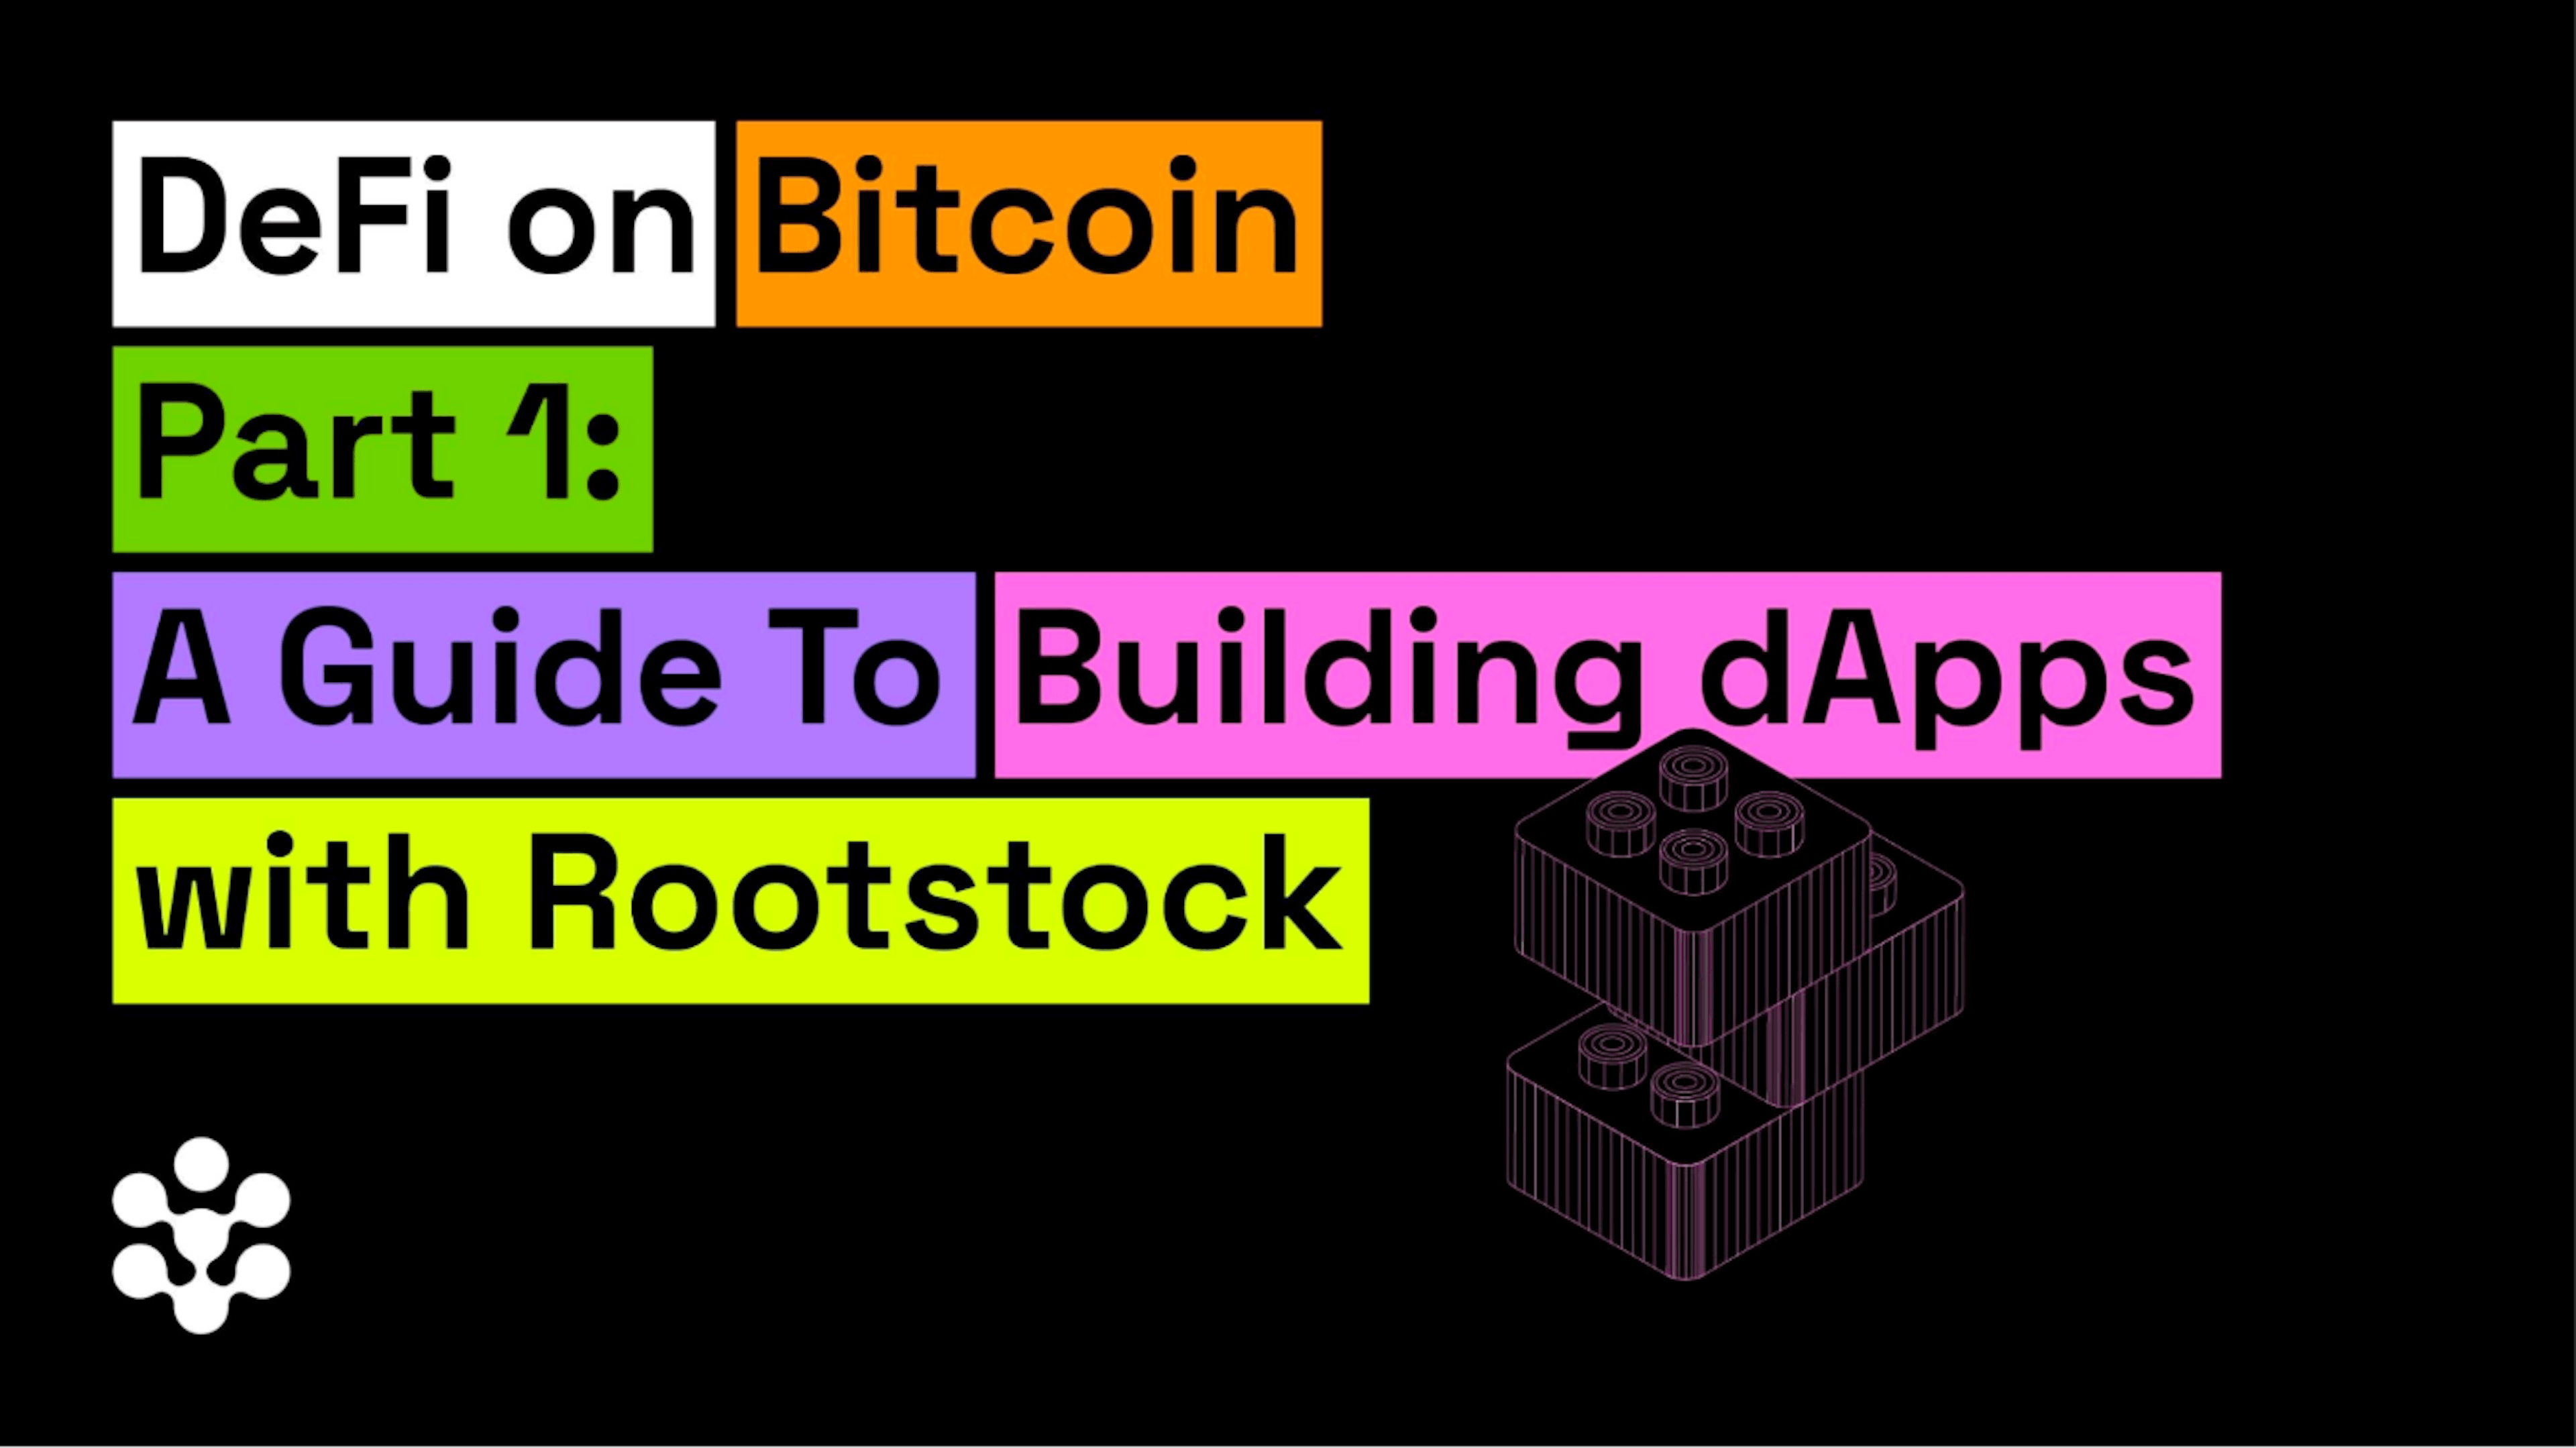 featured image - DeFi sur Bitcoin Partie 1 : Un guide pour créer des dApps avec Rootstock